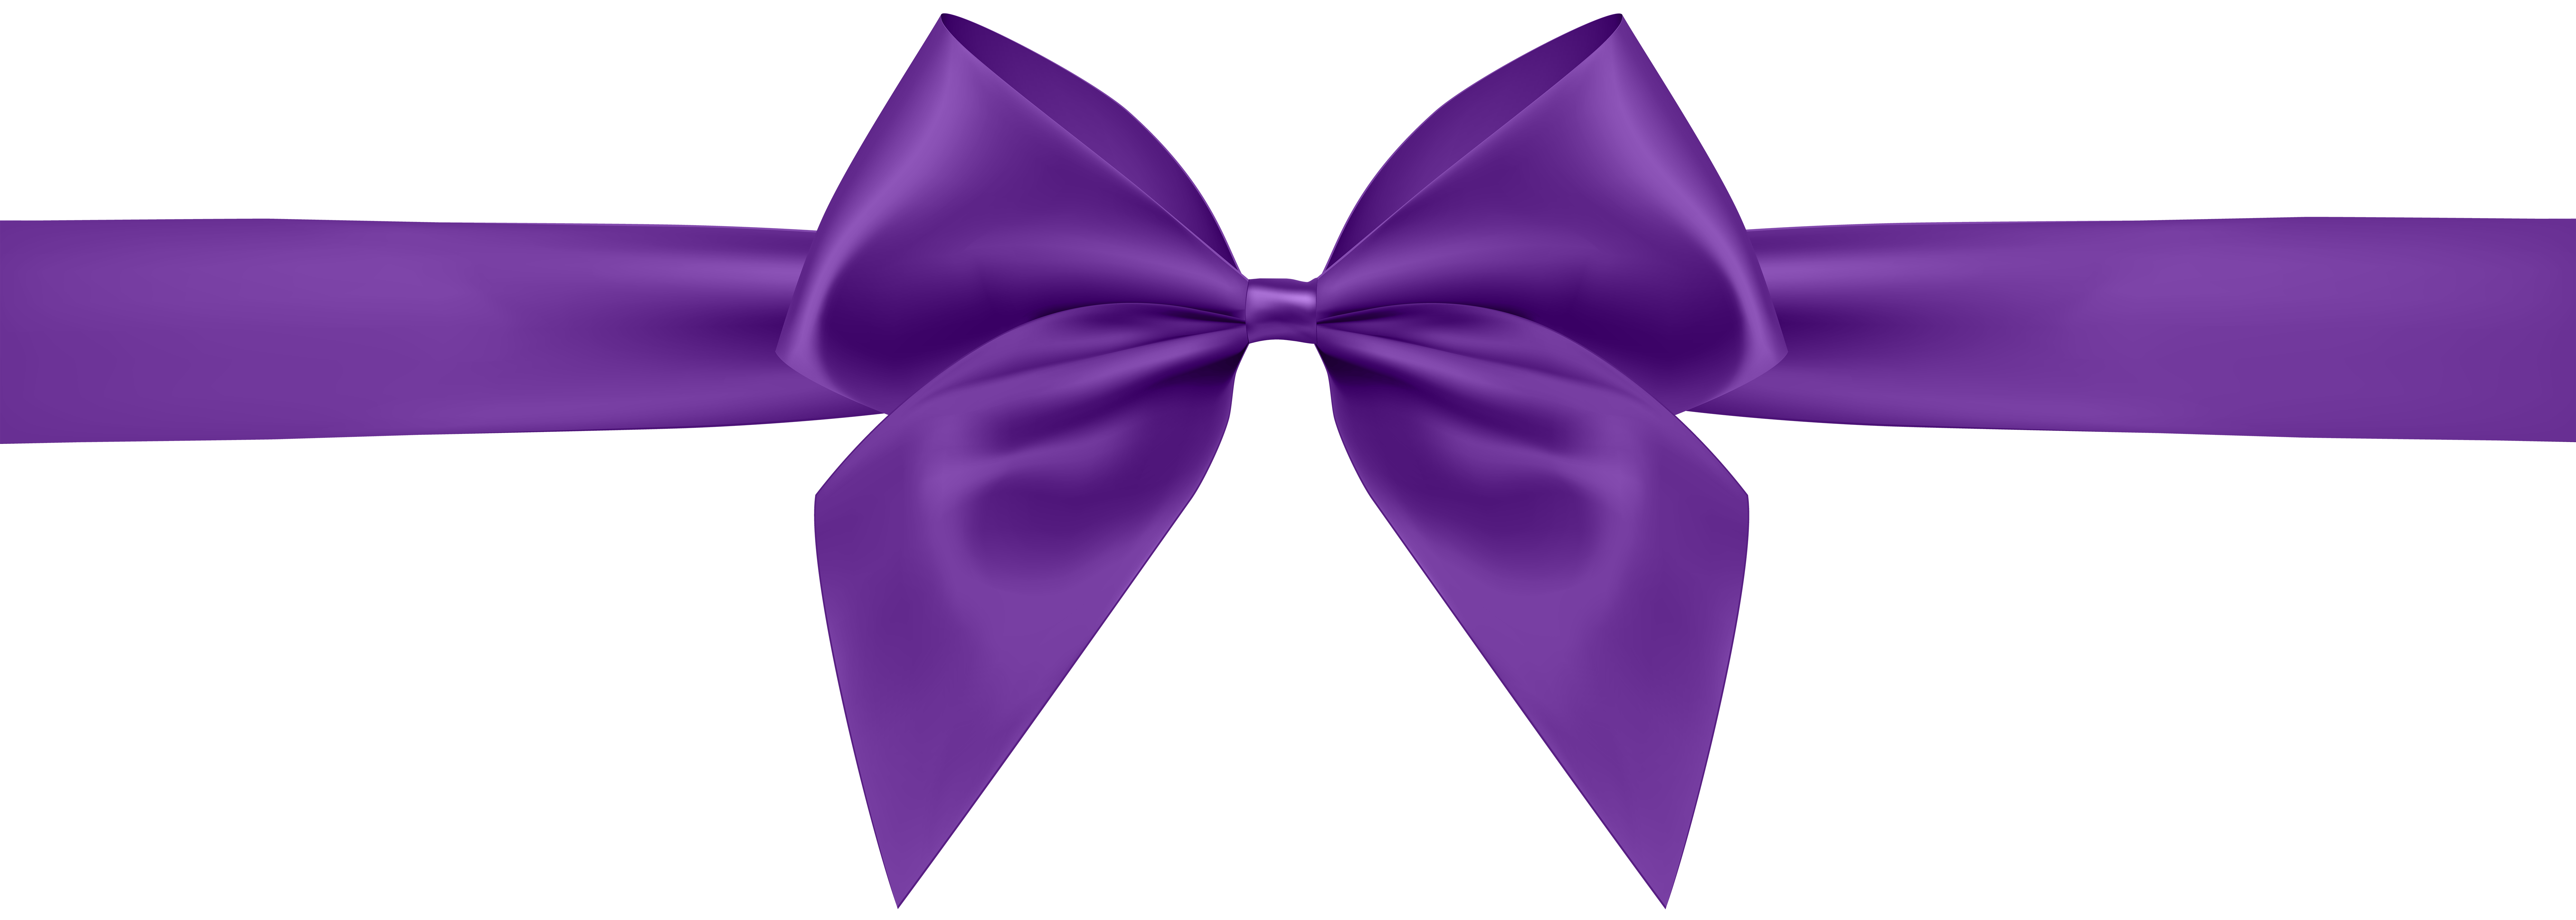 purple-ribbon-cliparts.